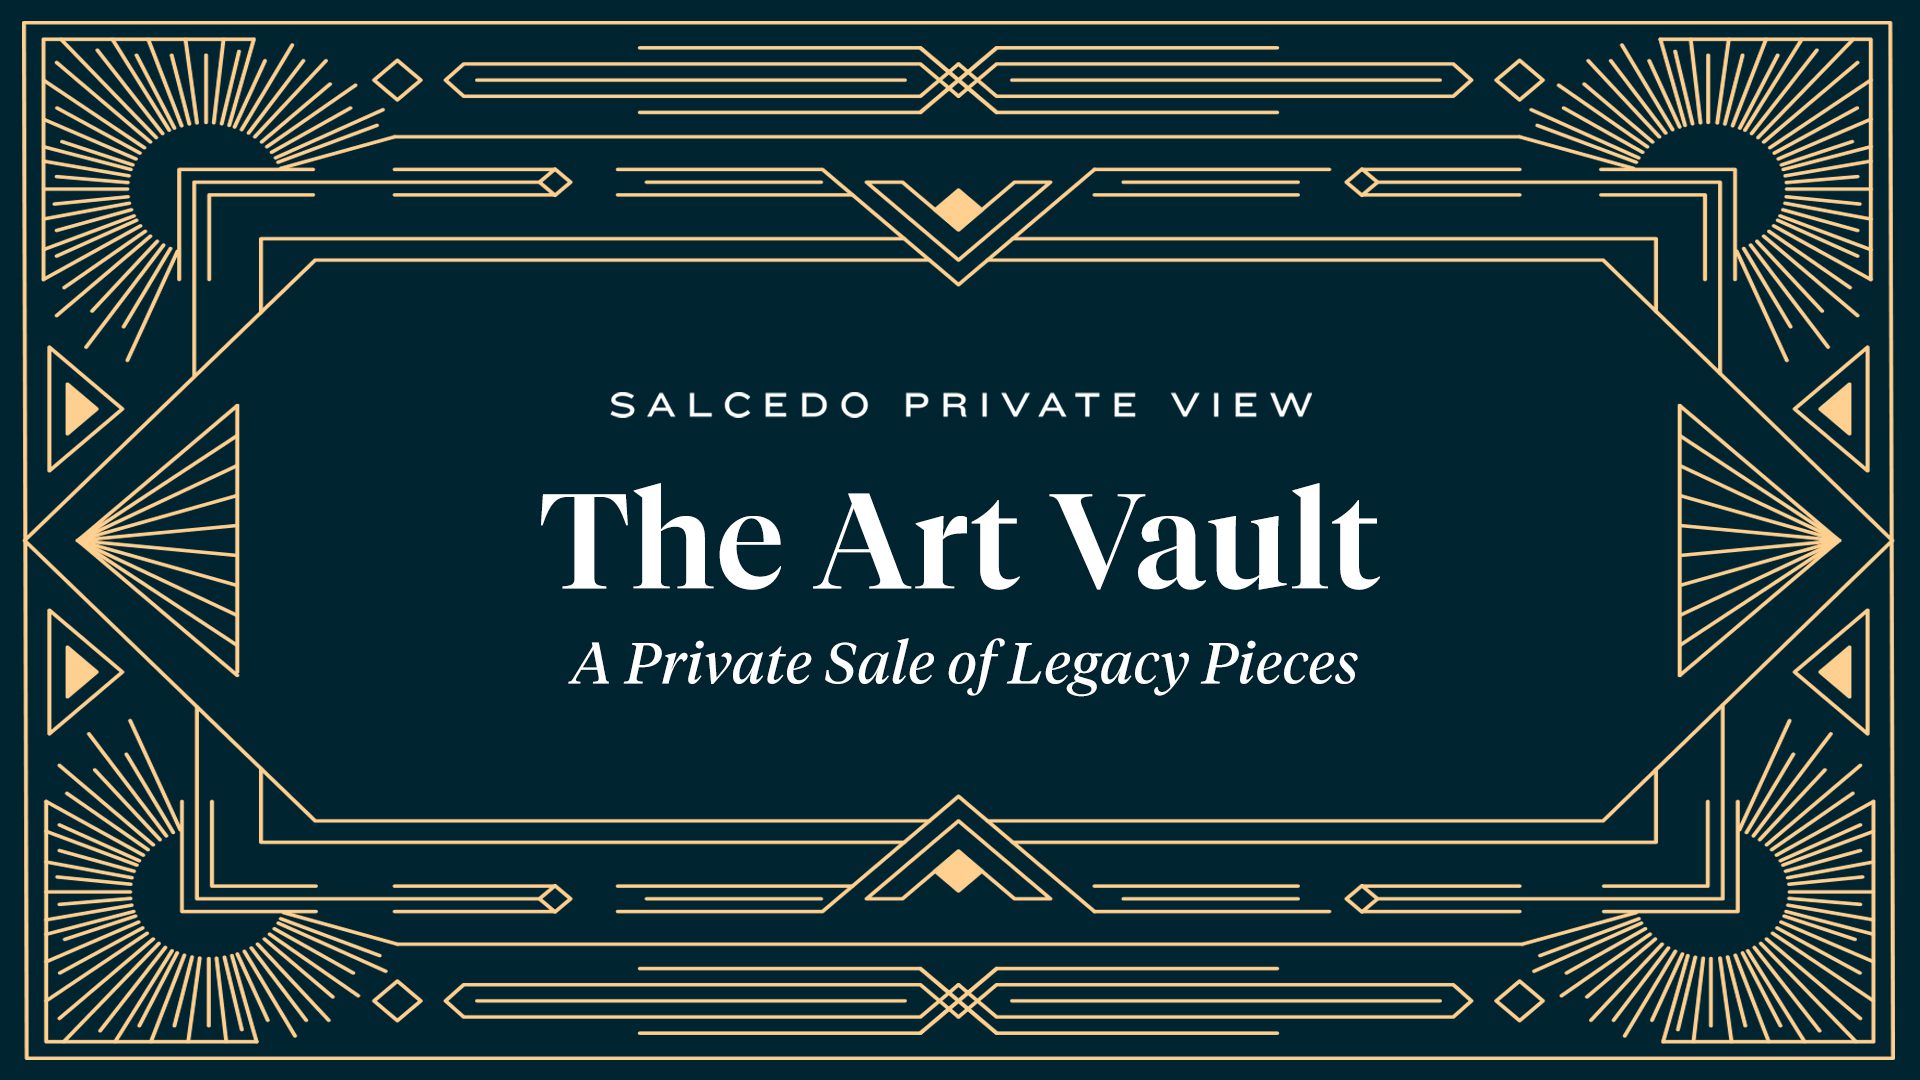 The Art Vault